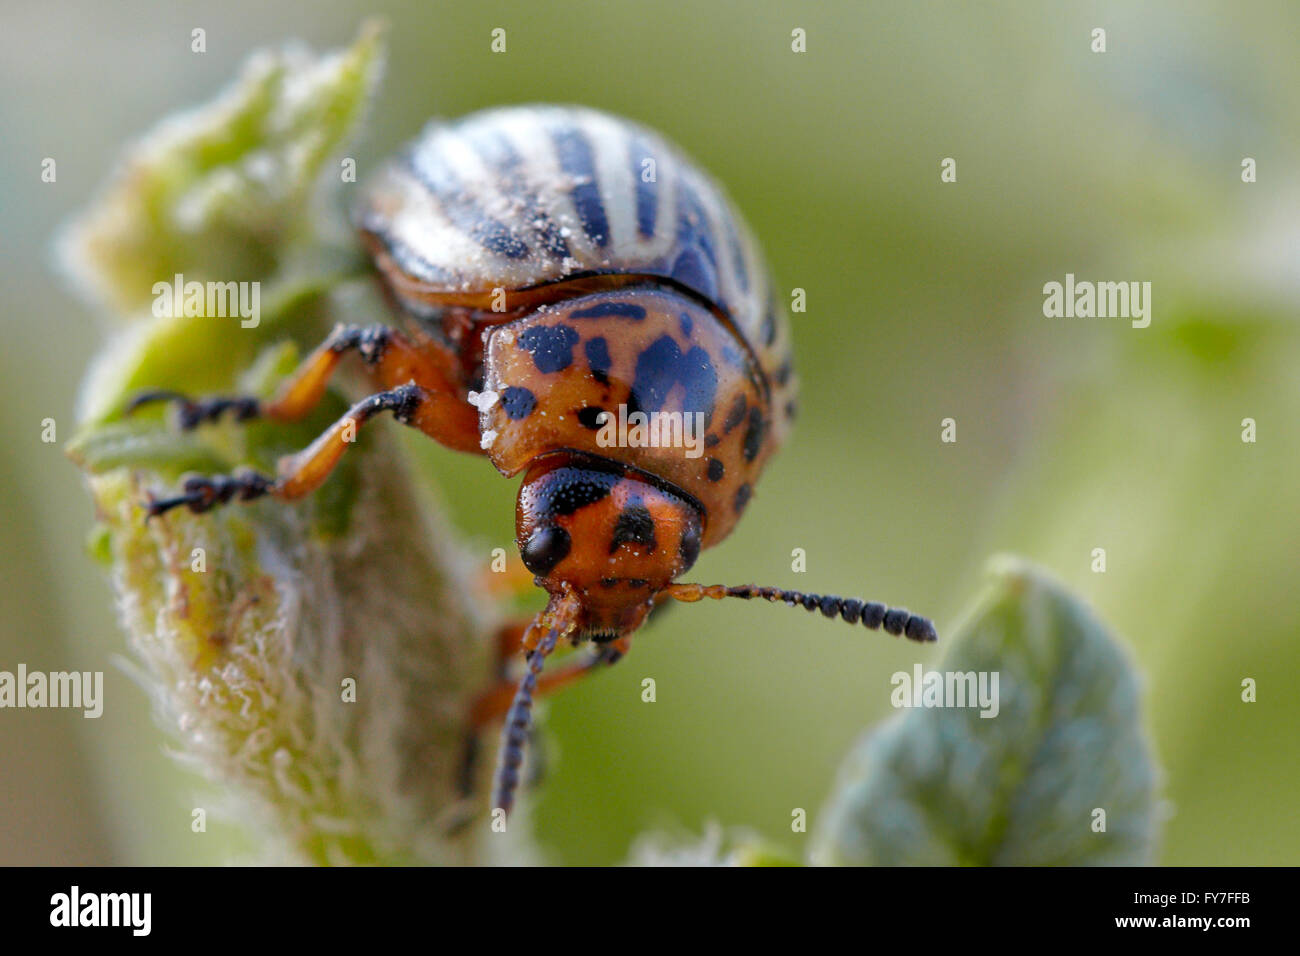 Beetle of potatoes. Potato beetle. Stock Photo